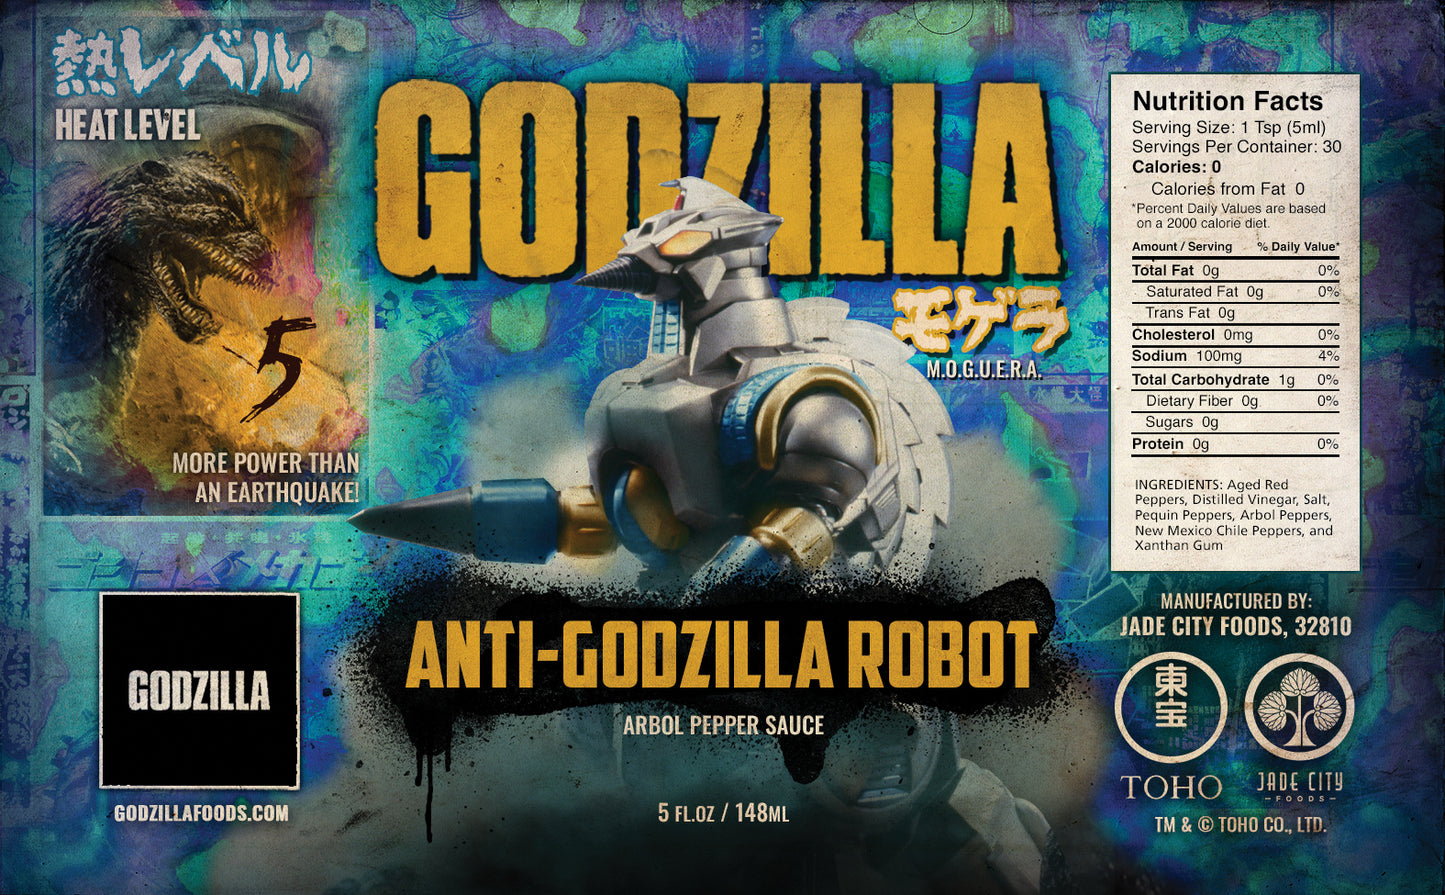 M.O.G.U.E.R.A. Anti-Godzilla Robot: Arbol Pepper Sauce